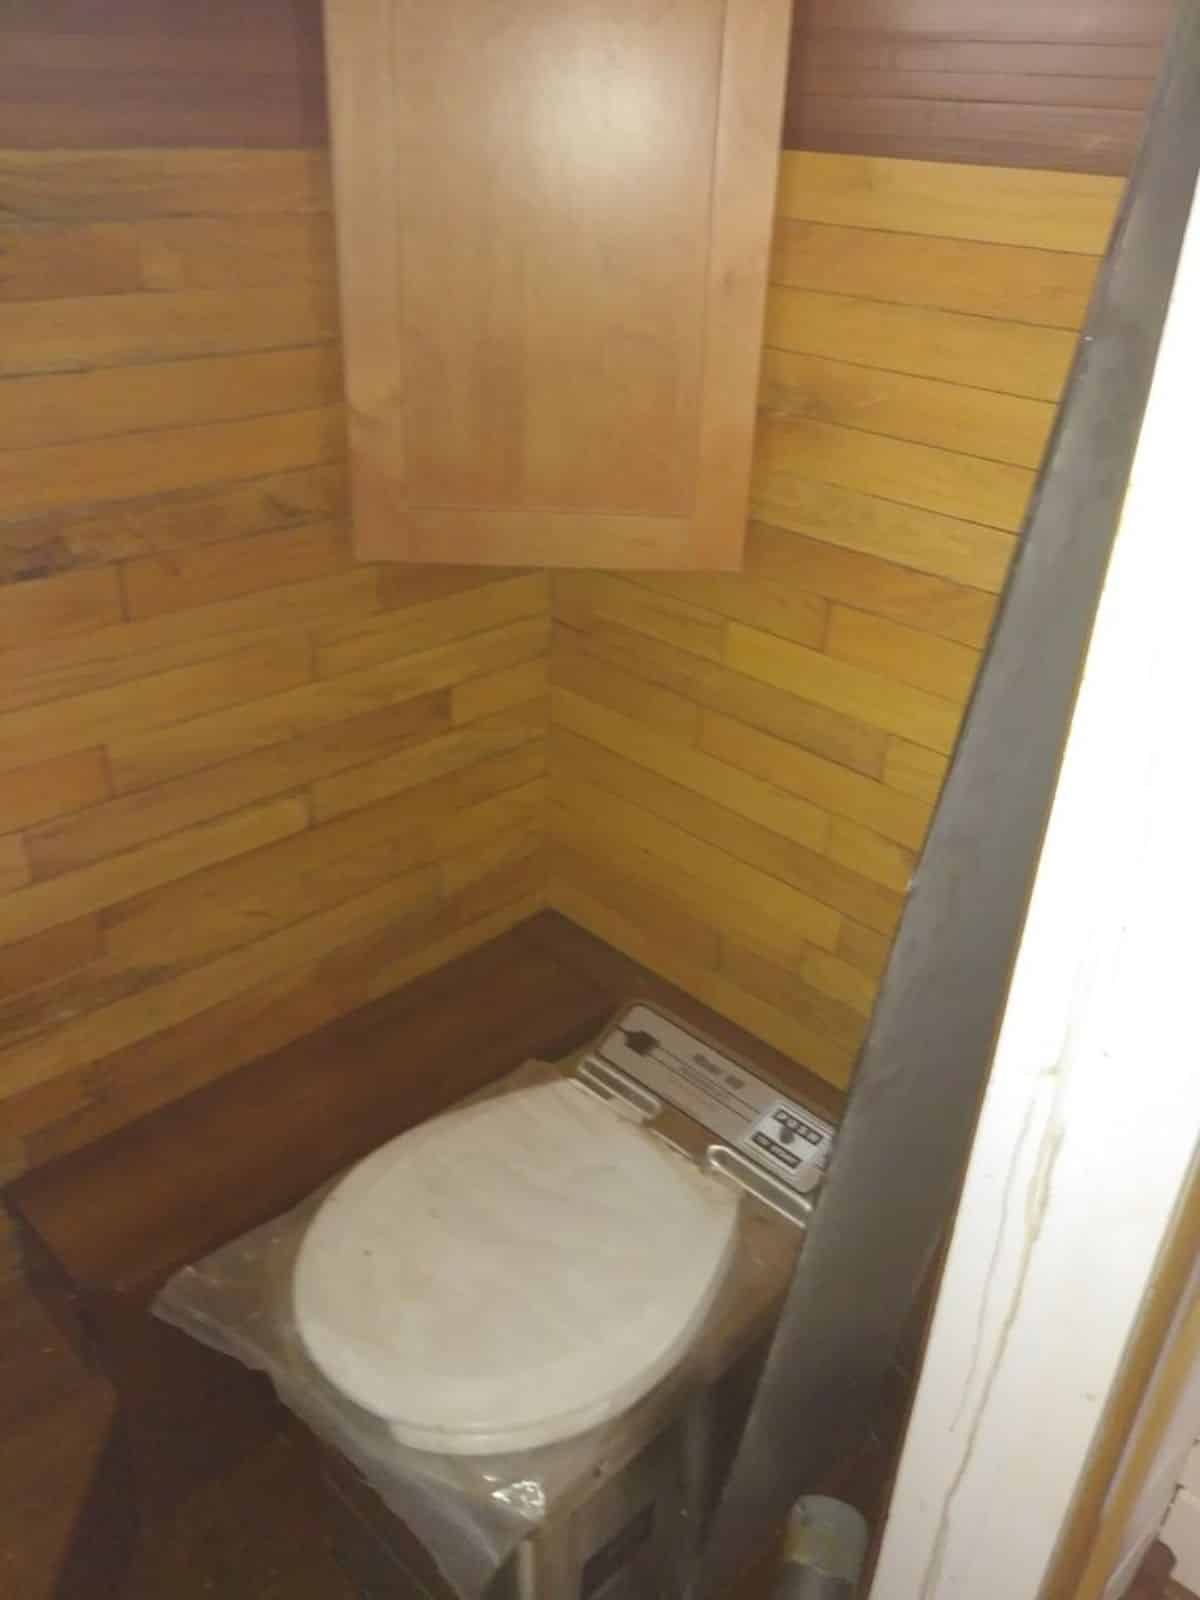 Bathroom of Tiny Trailer House